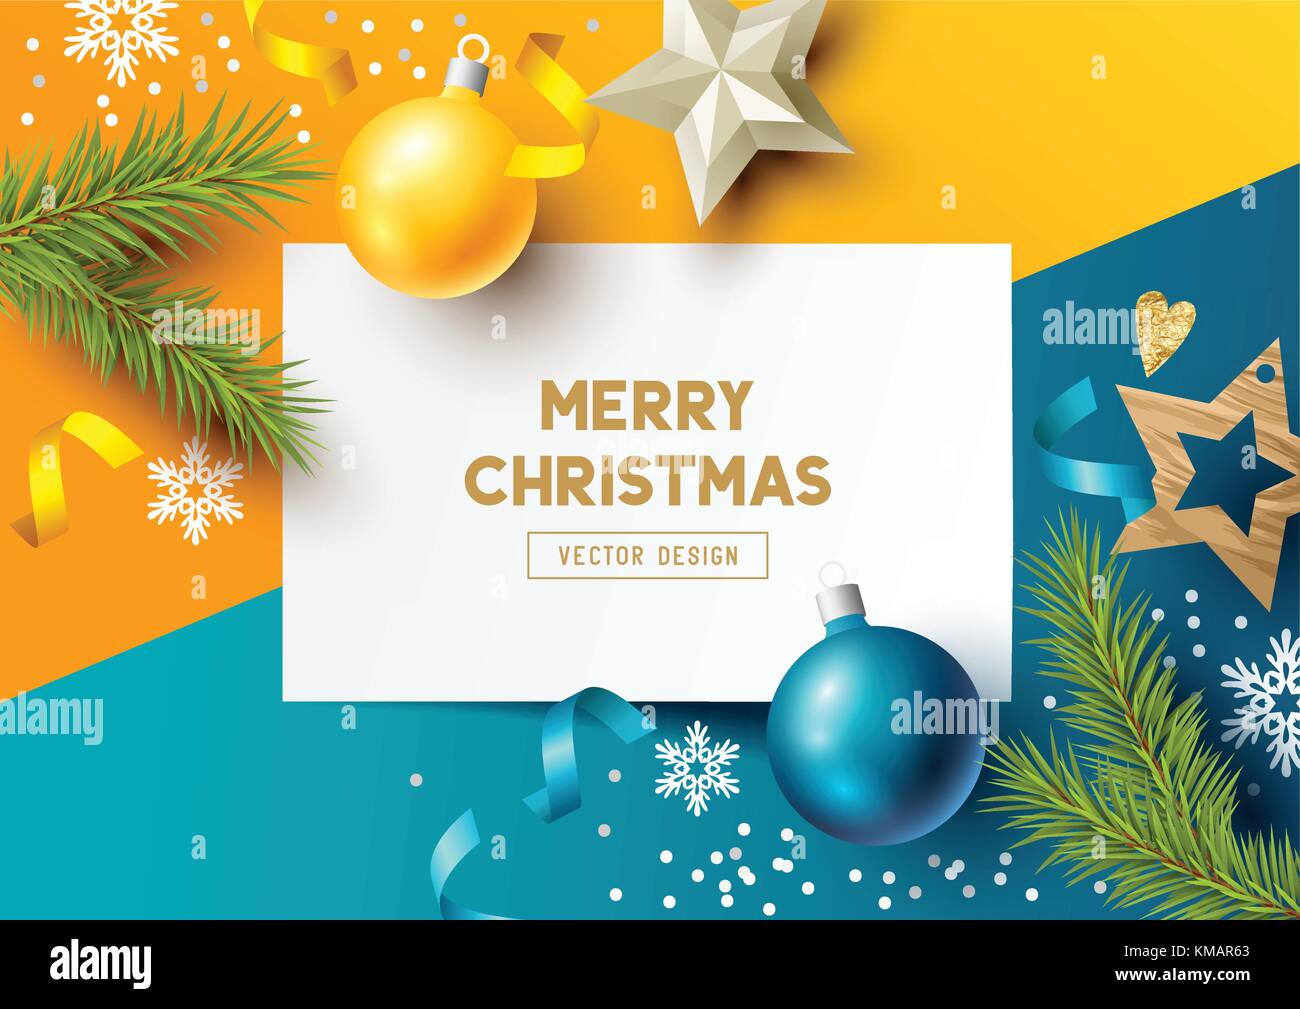 Frohe Weihnachten Komposition mit Tannenzweigen, Christbaumkugeln und Schneeflocken auf einem bunten Abstrakt Hintergrund. top view Vector Illustration. Stock Vektor